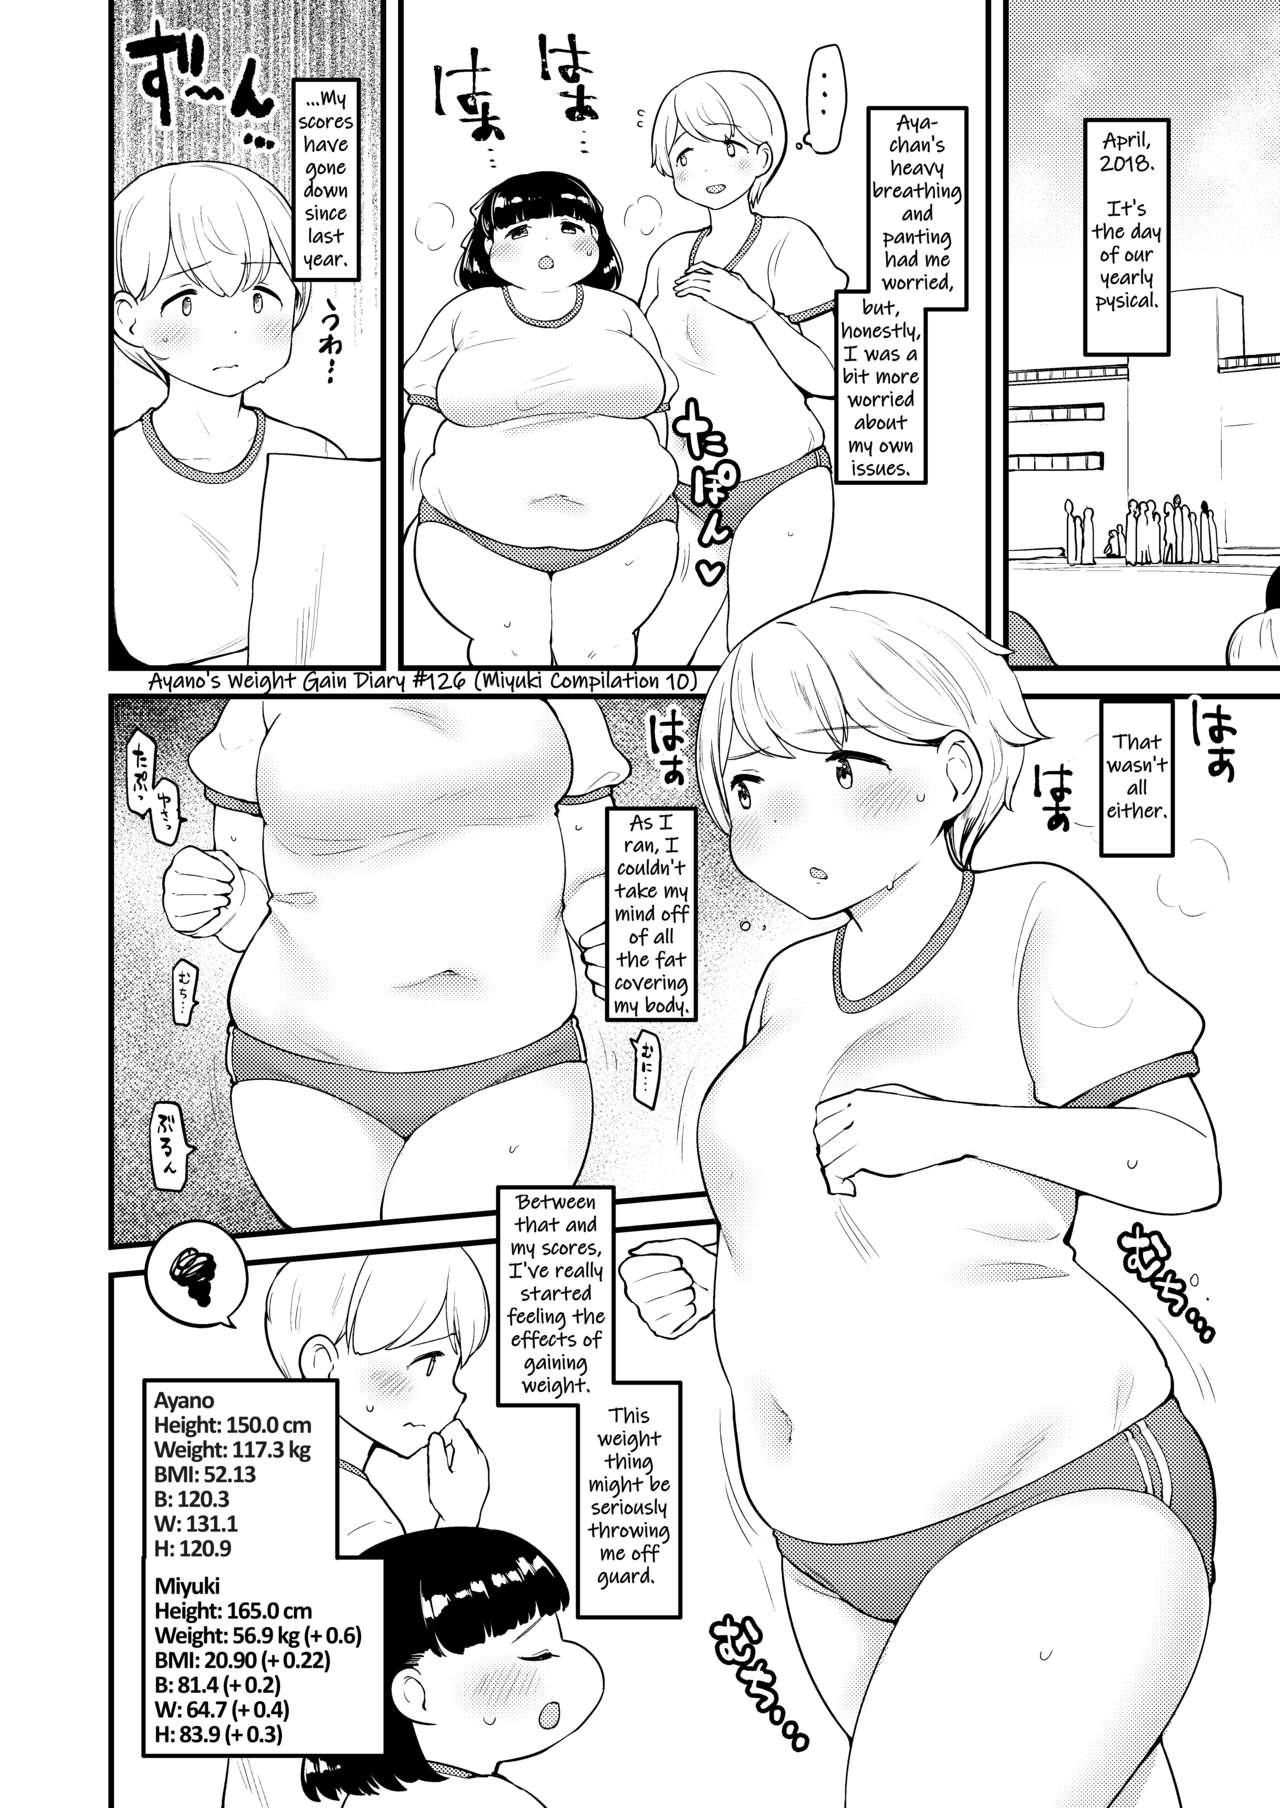 Ayano's Weight Gain Diary 125